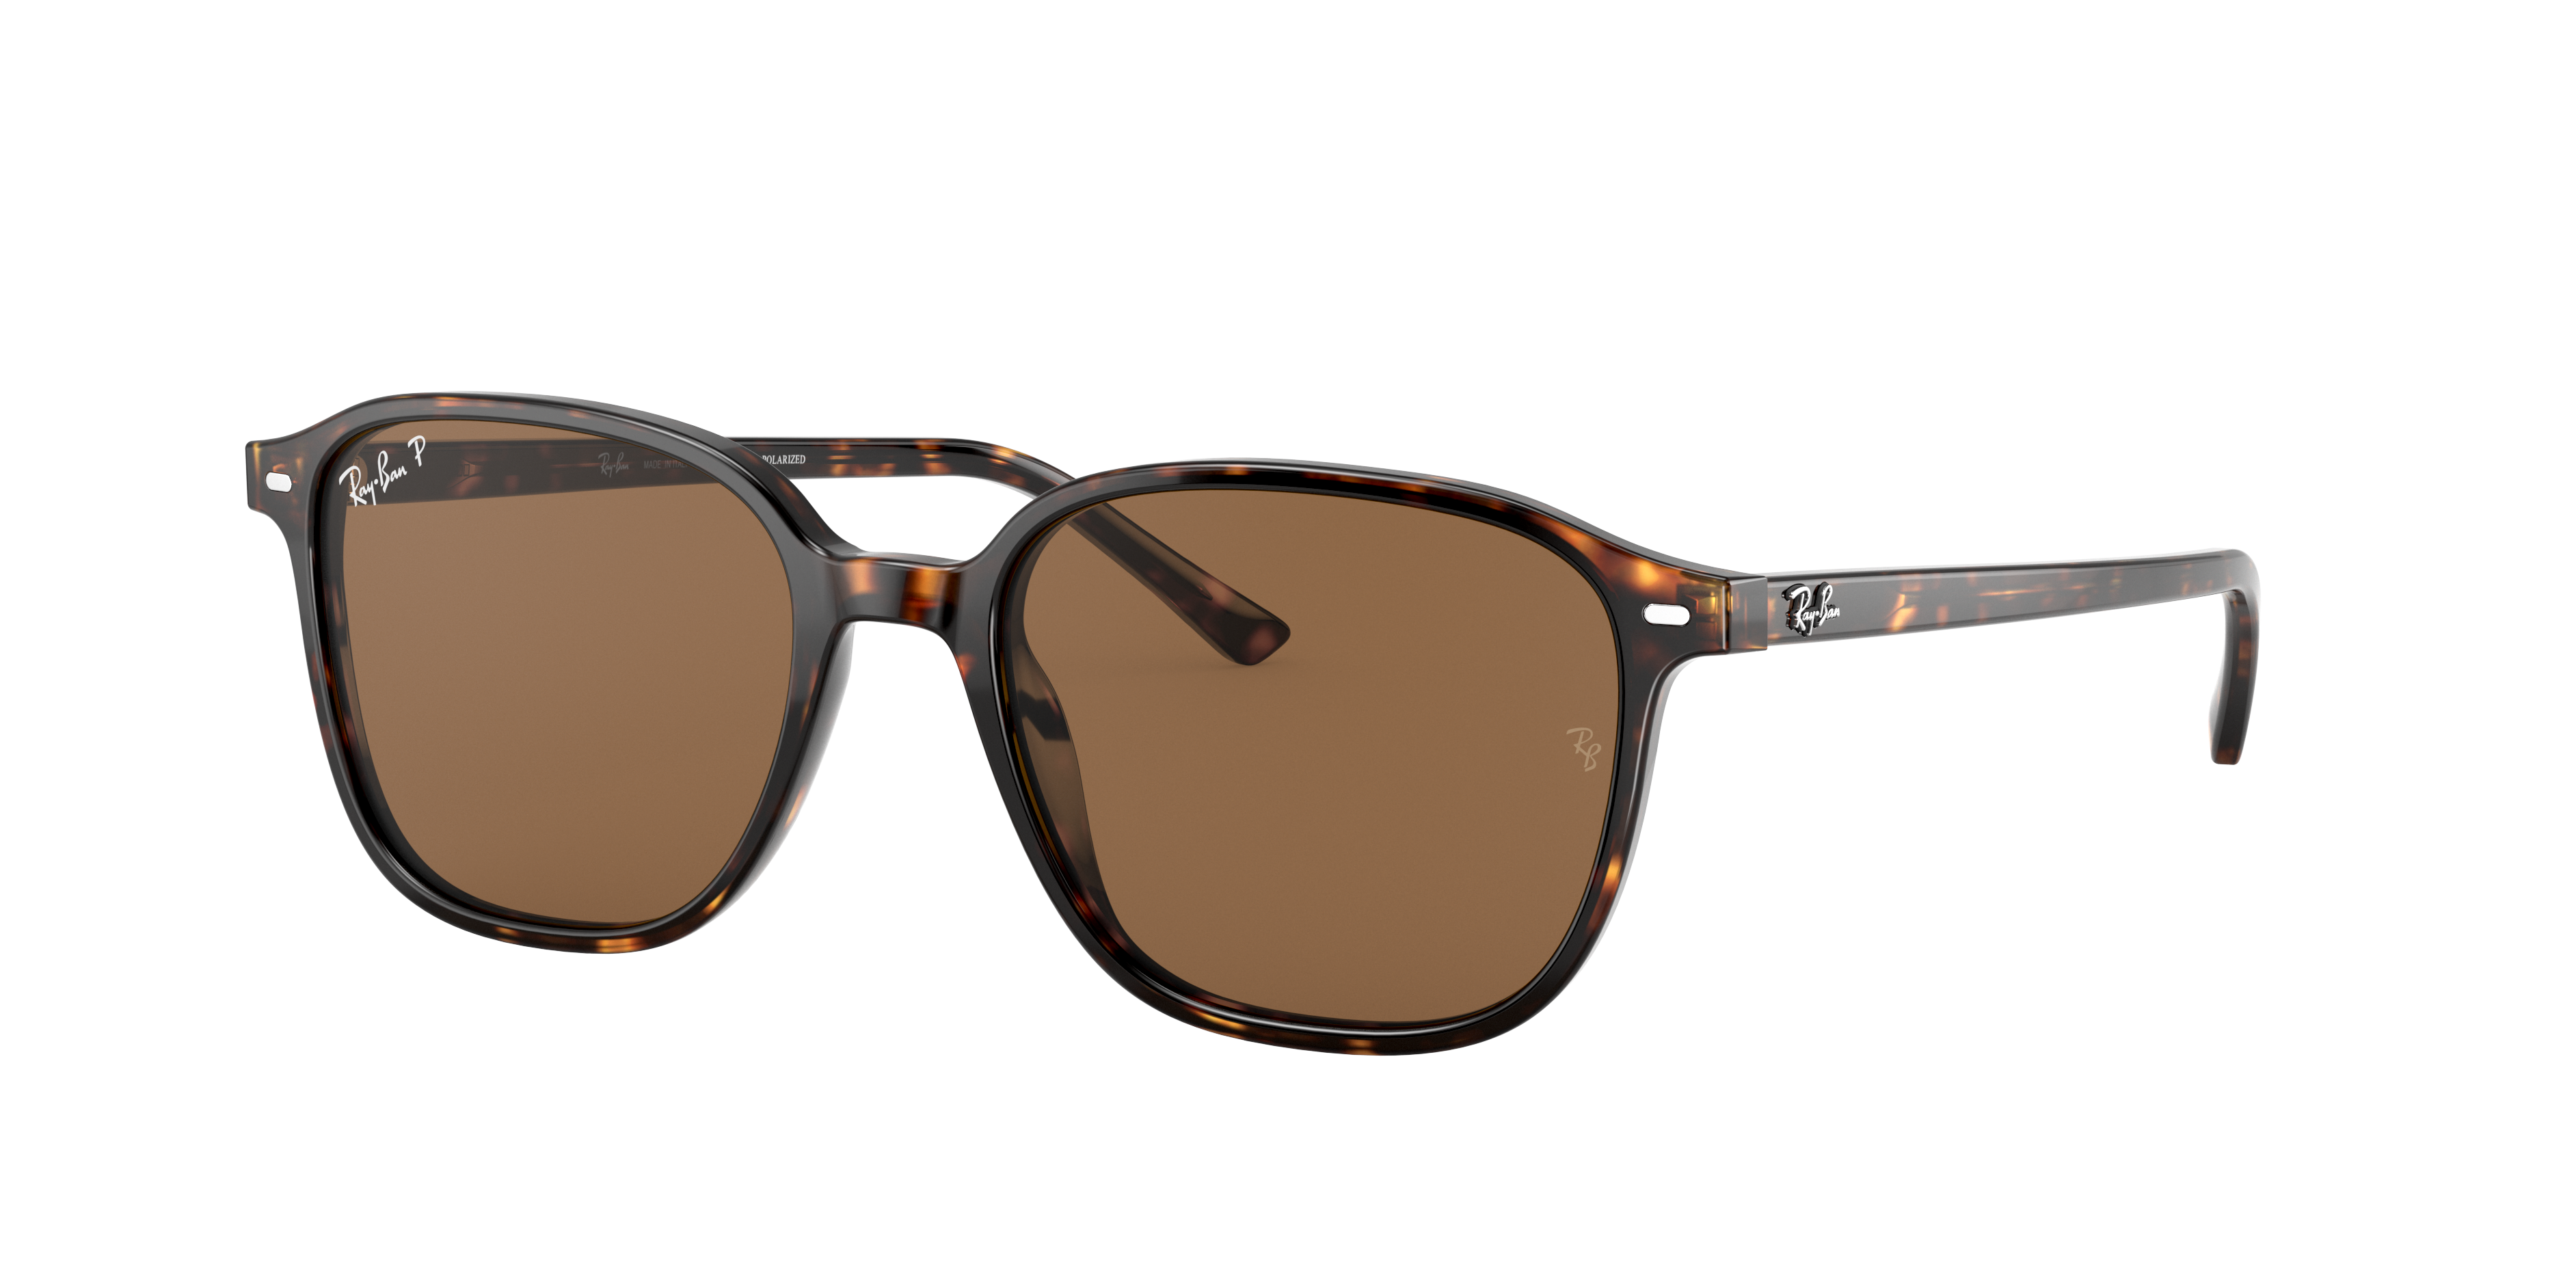 Sluiting Bouwen Typisch Leonard Sunglasses in Tortoise and Brown | Ray-Ban®